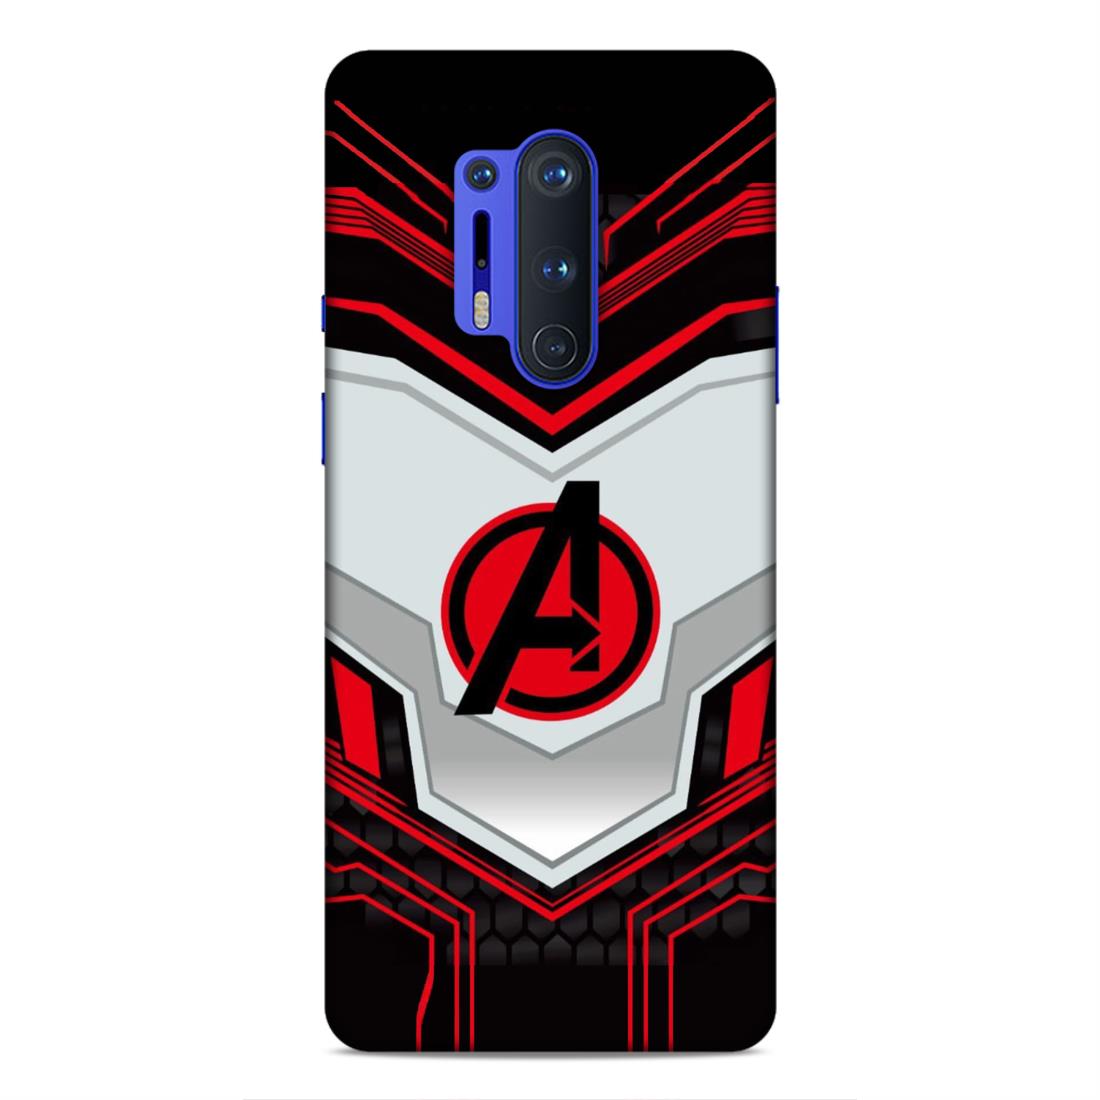 Avenger Endgame Hard Back Case For OnePlus 8 Pro